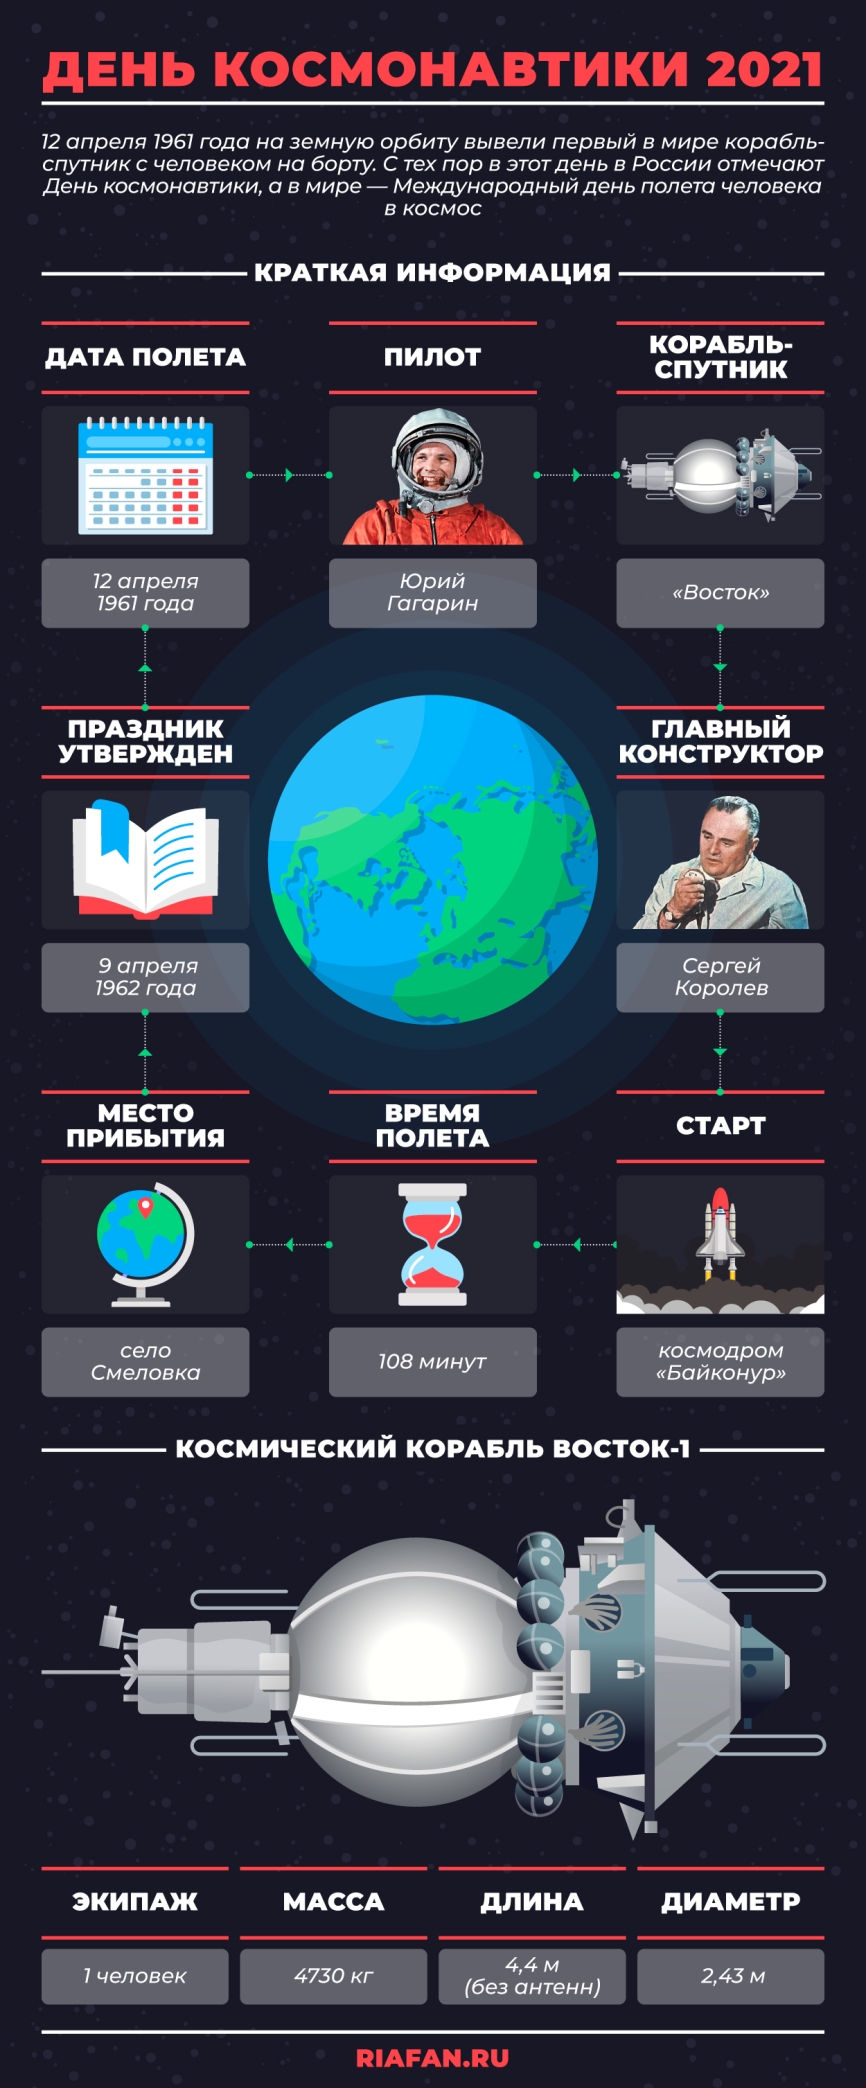 12 цитат легендарного Юрия Гагарина о космосе, спорте, образовании, детях и людях